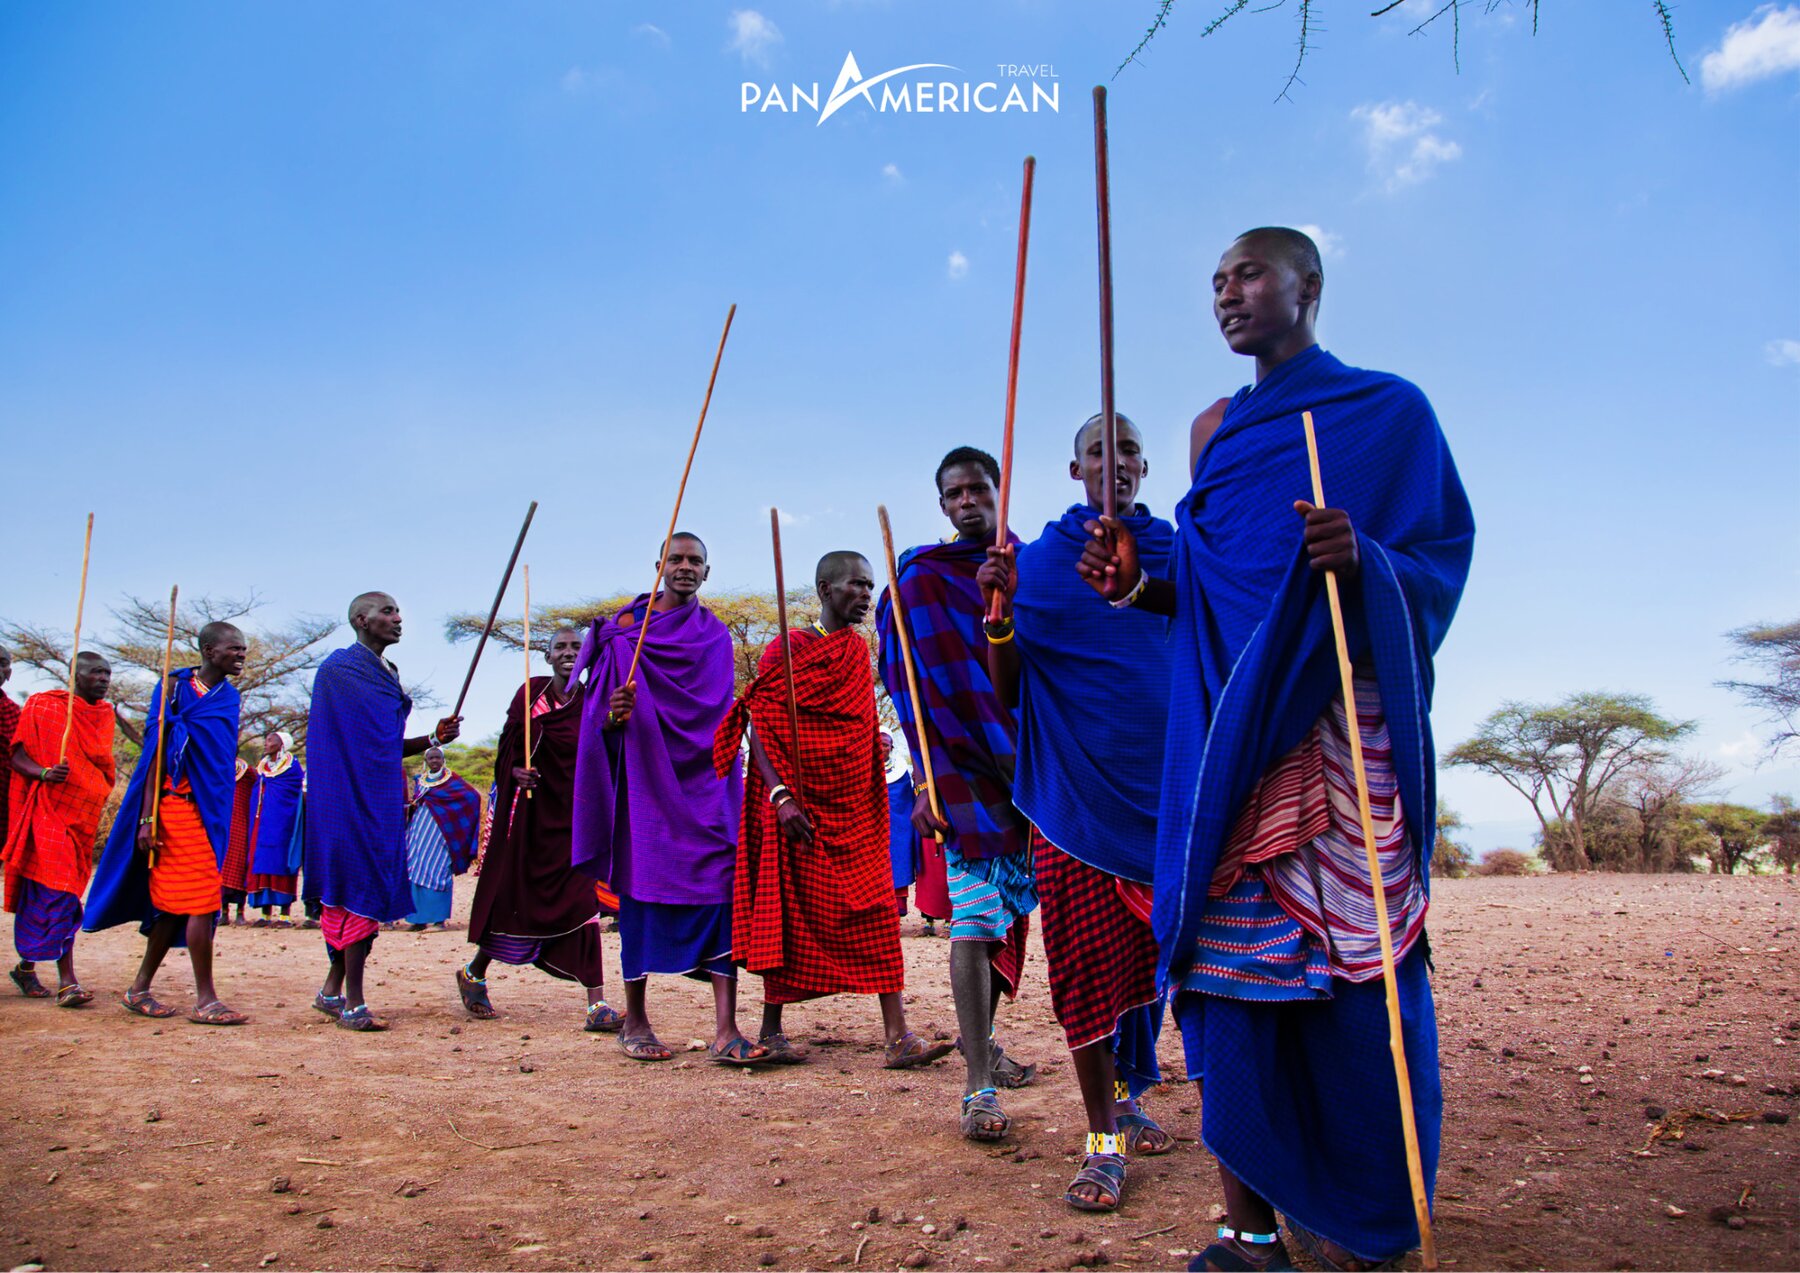 Lễ hội Maasai là một lễ hội văn hóa của người Maasai